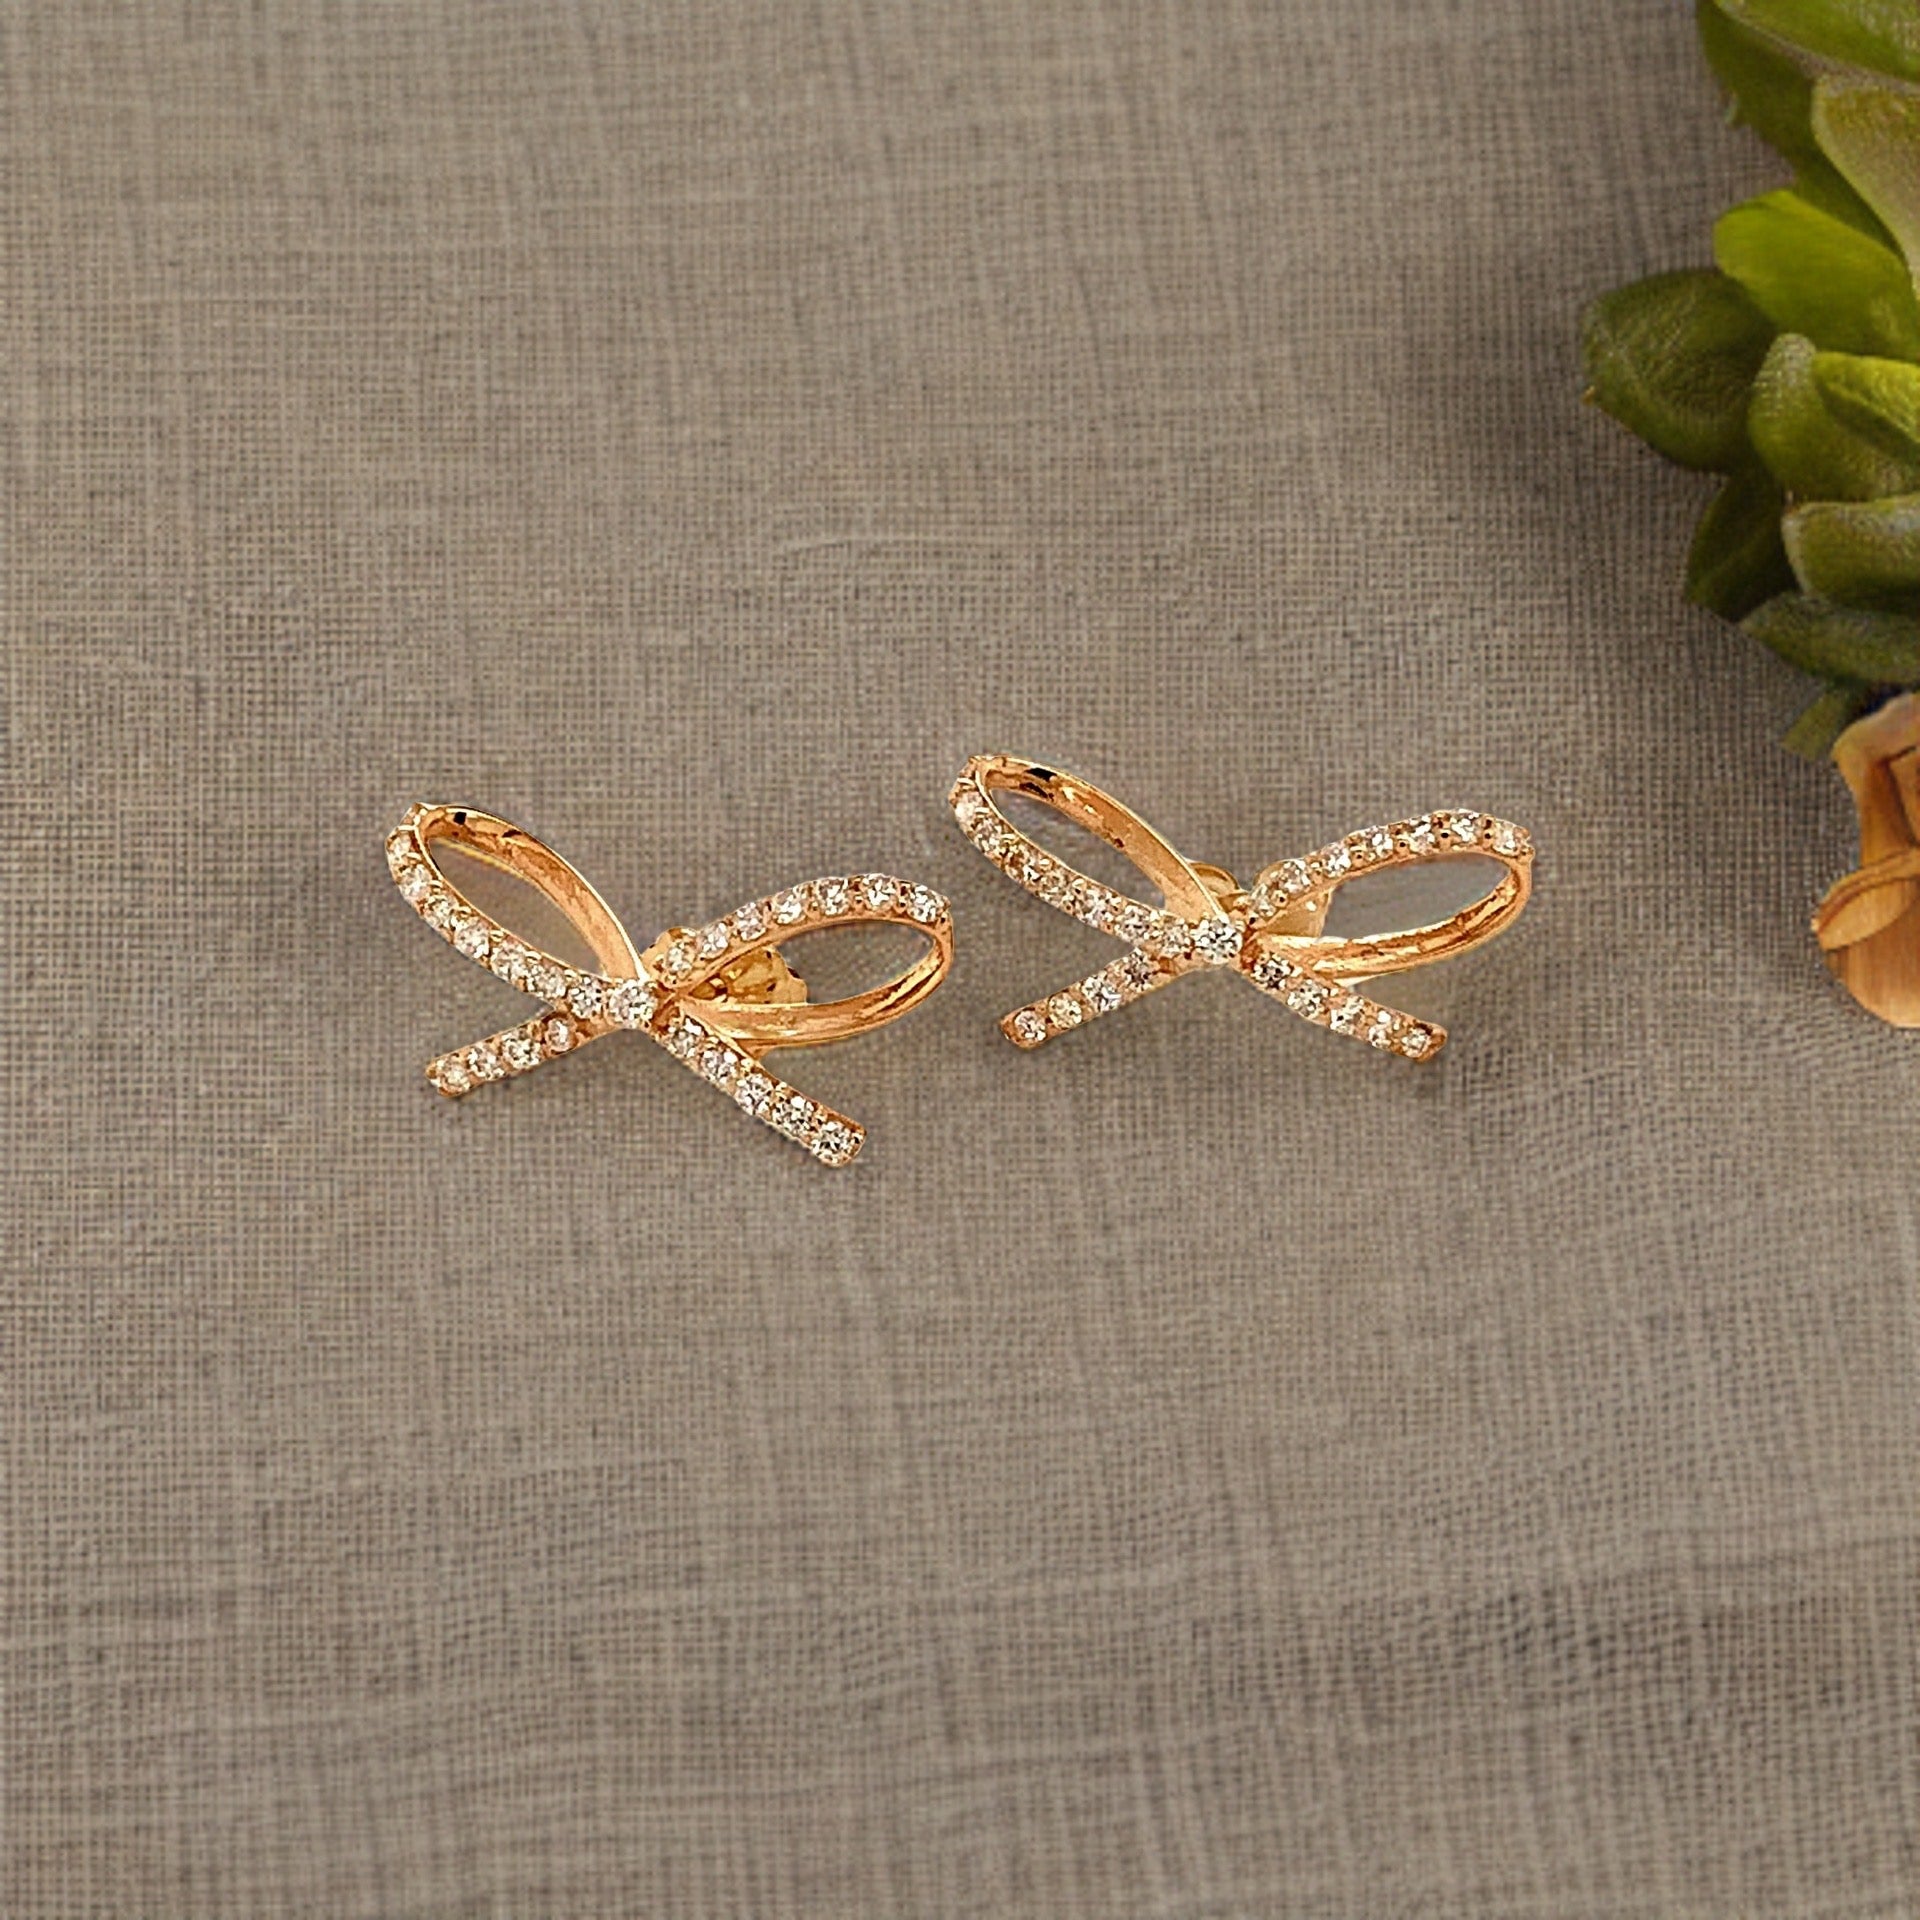 Diamond Bow Stud Earrings 14k Gold 0.5 TCW Certified $3,950 111897 - Certified Fine Jewelry